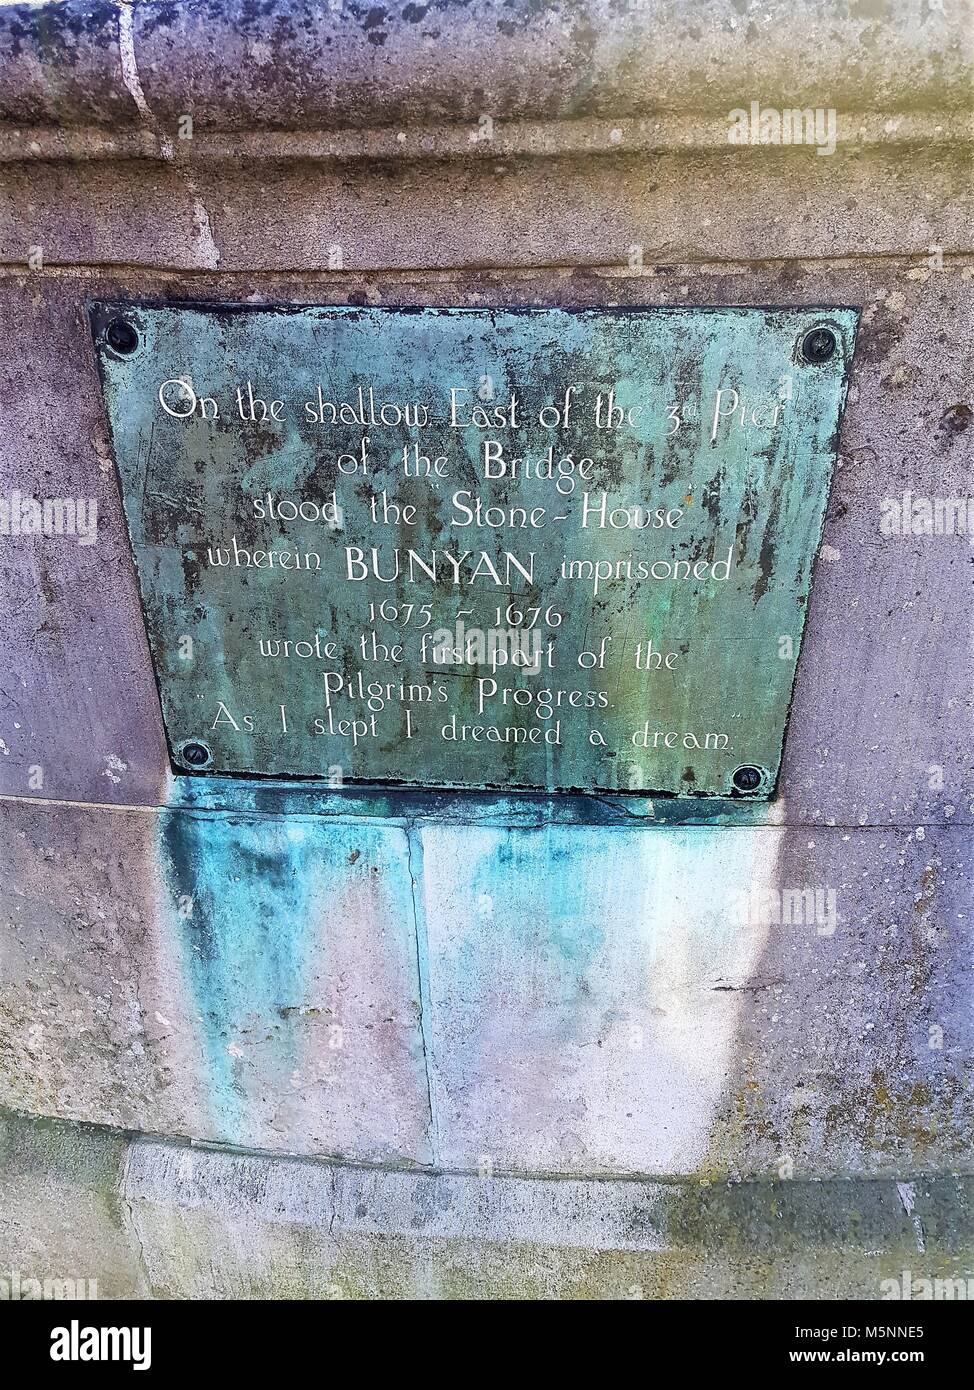 Plakette auf der Brücke über den Fluss Great Ouse, Bedford, Großbritannien - Bunyan inhaftiert und schrieb den ersten Teil des "Pilgrim's Progress" Stockfoto